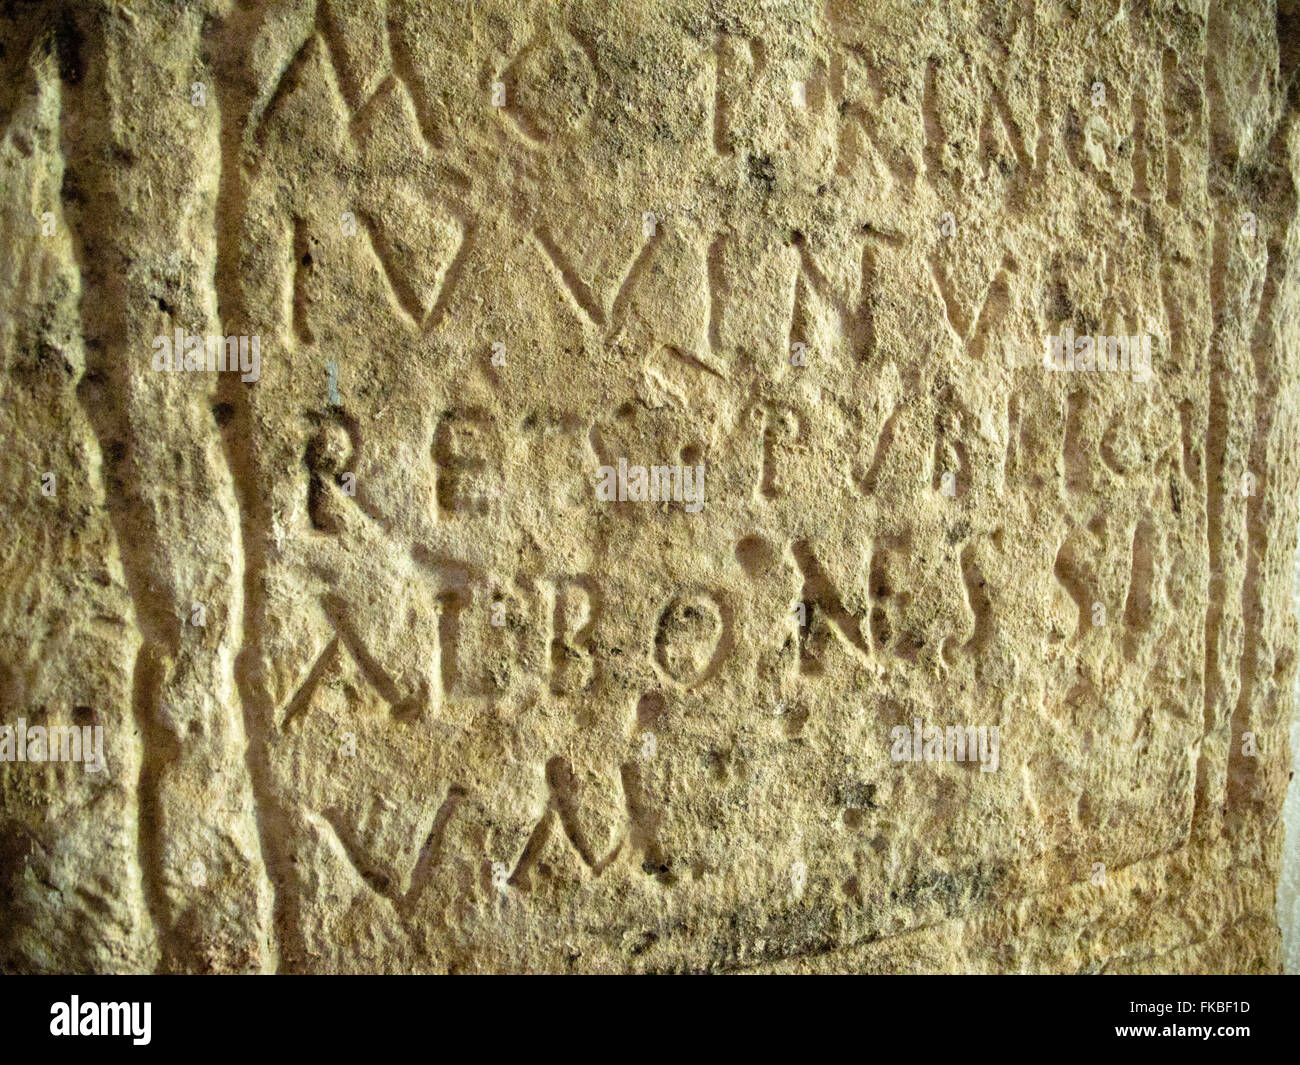 Kroatien, Istrien, Labin, Stadtmuseum, das älteste schriftliche Dokument über Labin ist ein Relief aus dem 3. Jh. n. Chr. mit de Stock Photo